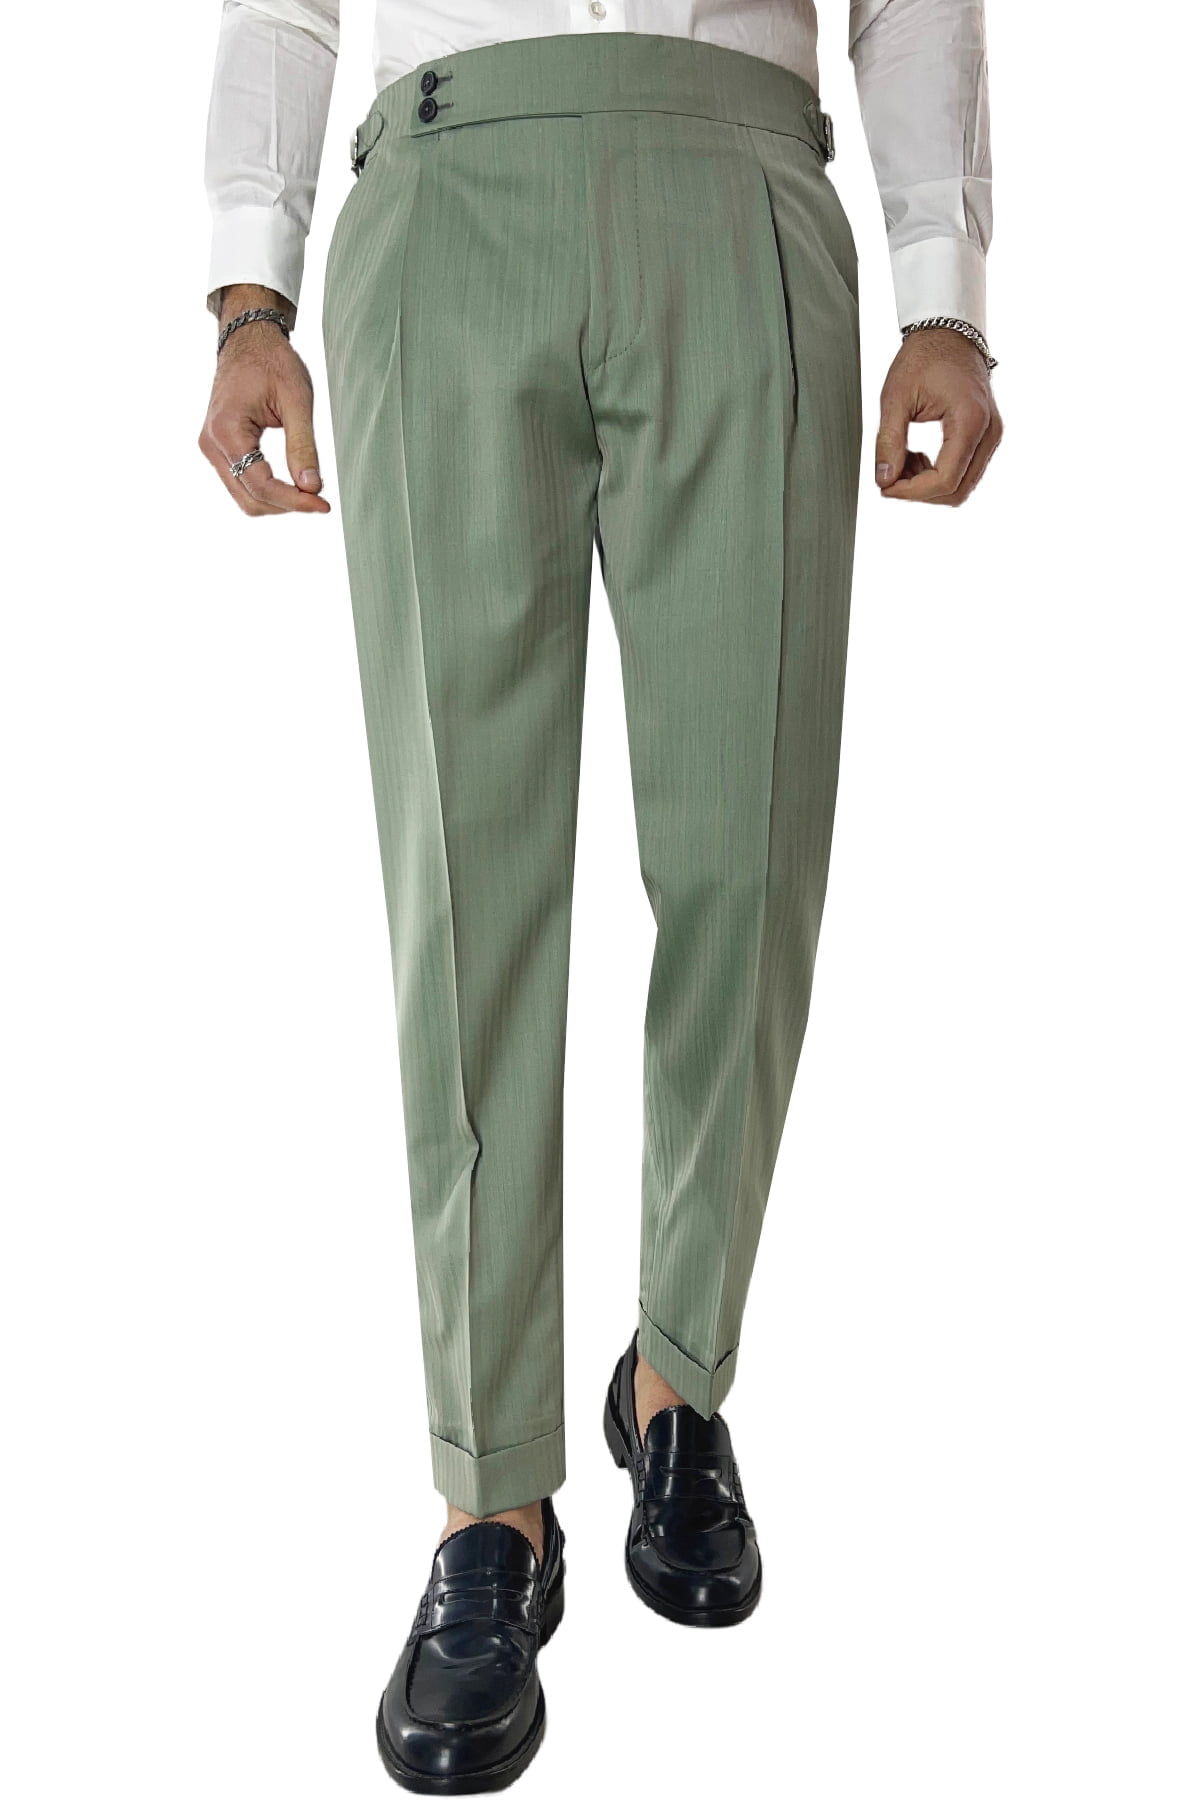 Pantalone uomo verde Solaro in fresco lana e seta Holland & Sherry vita alta con pinces fibbie laterali e risvolto 4cm